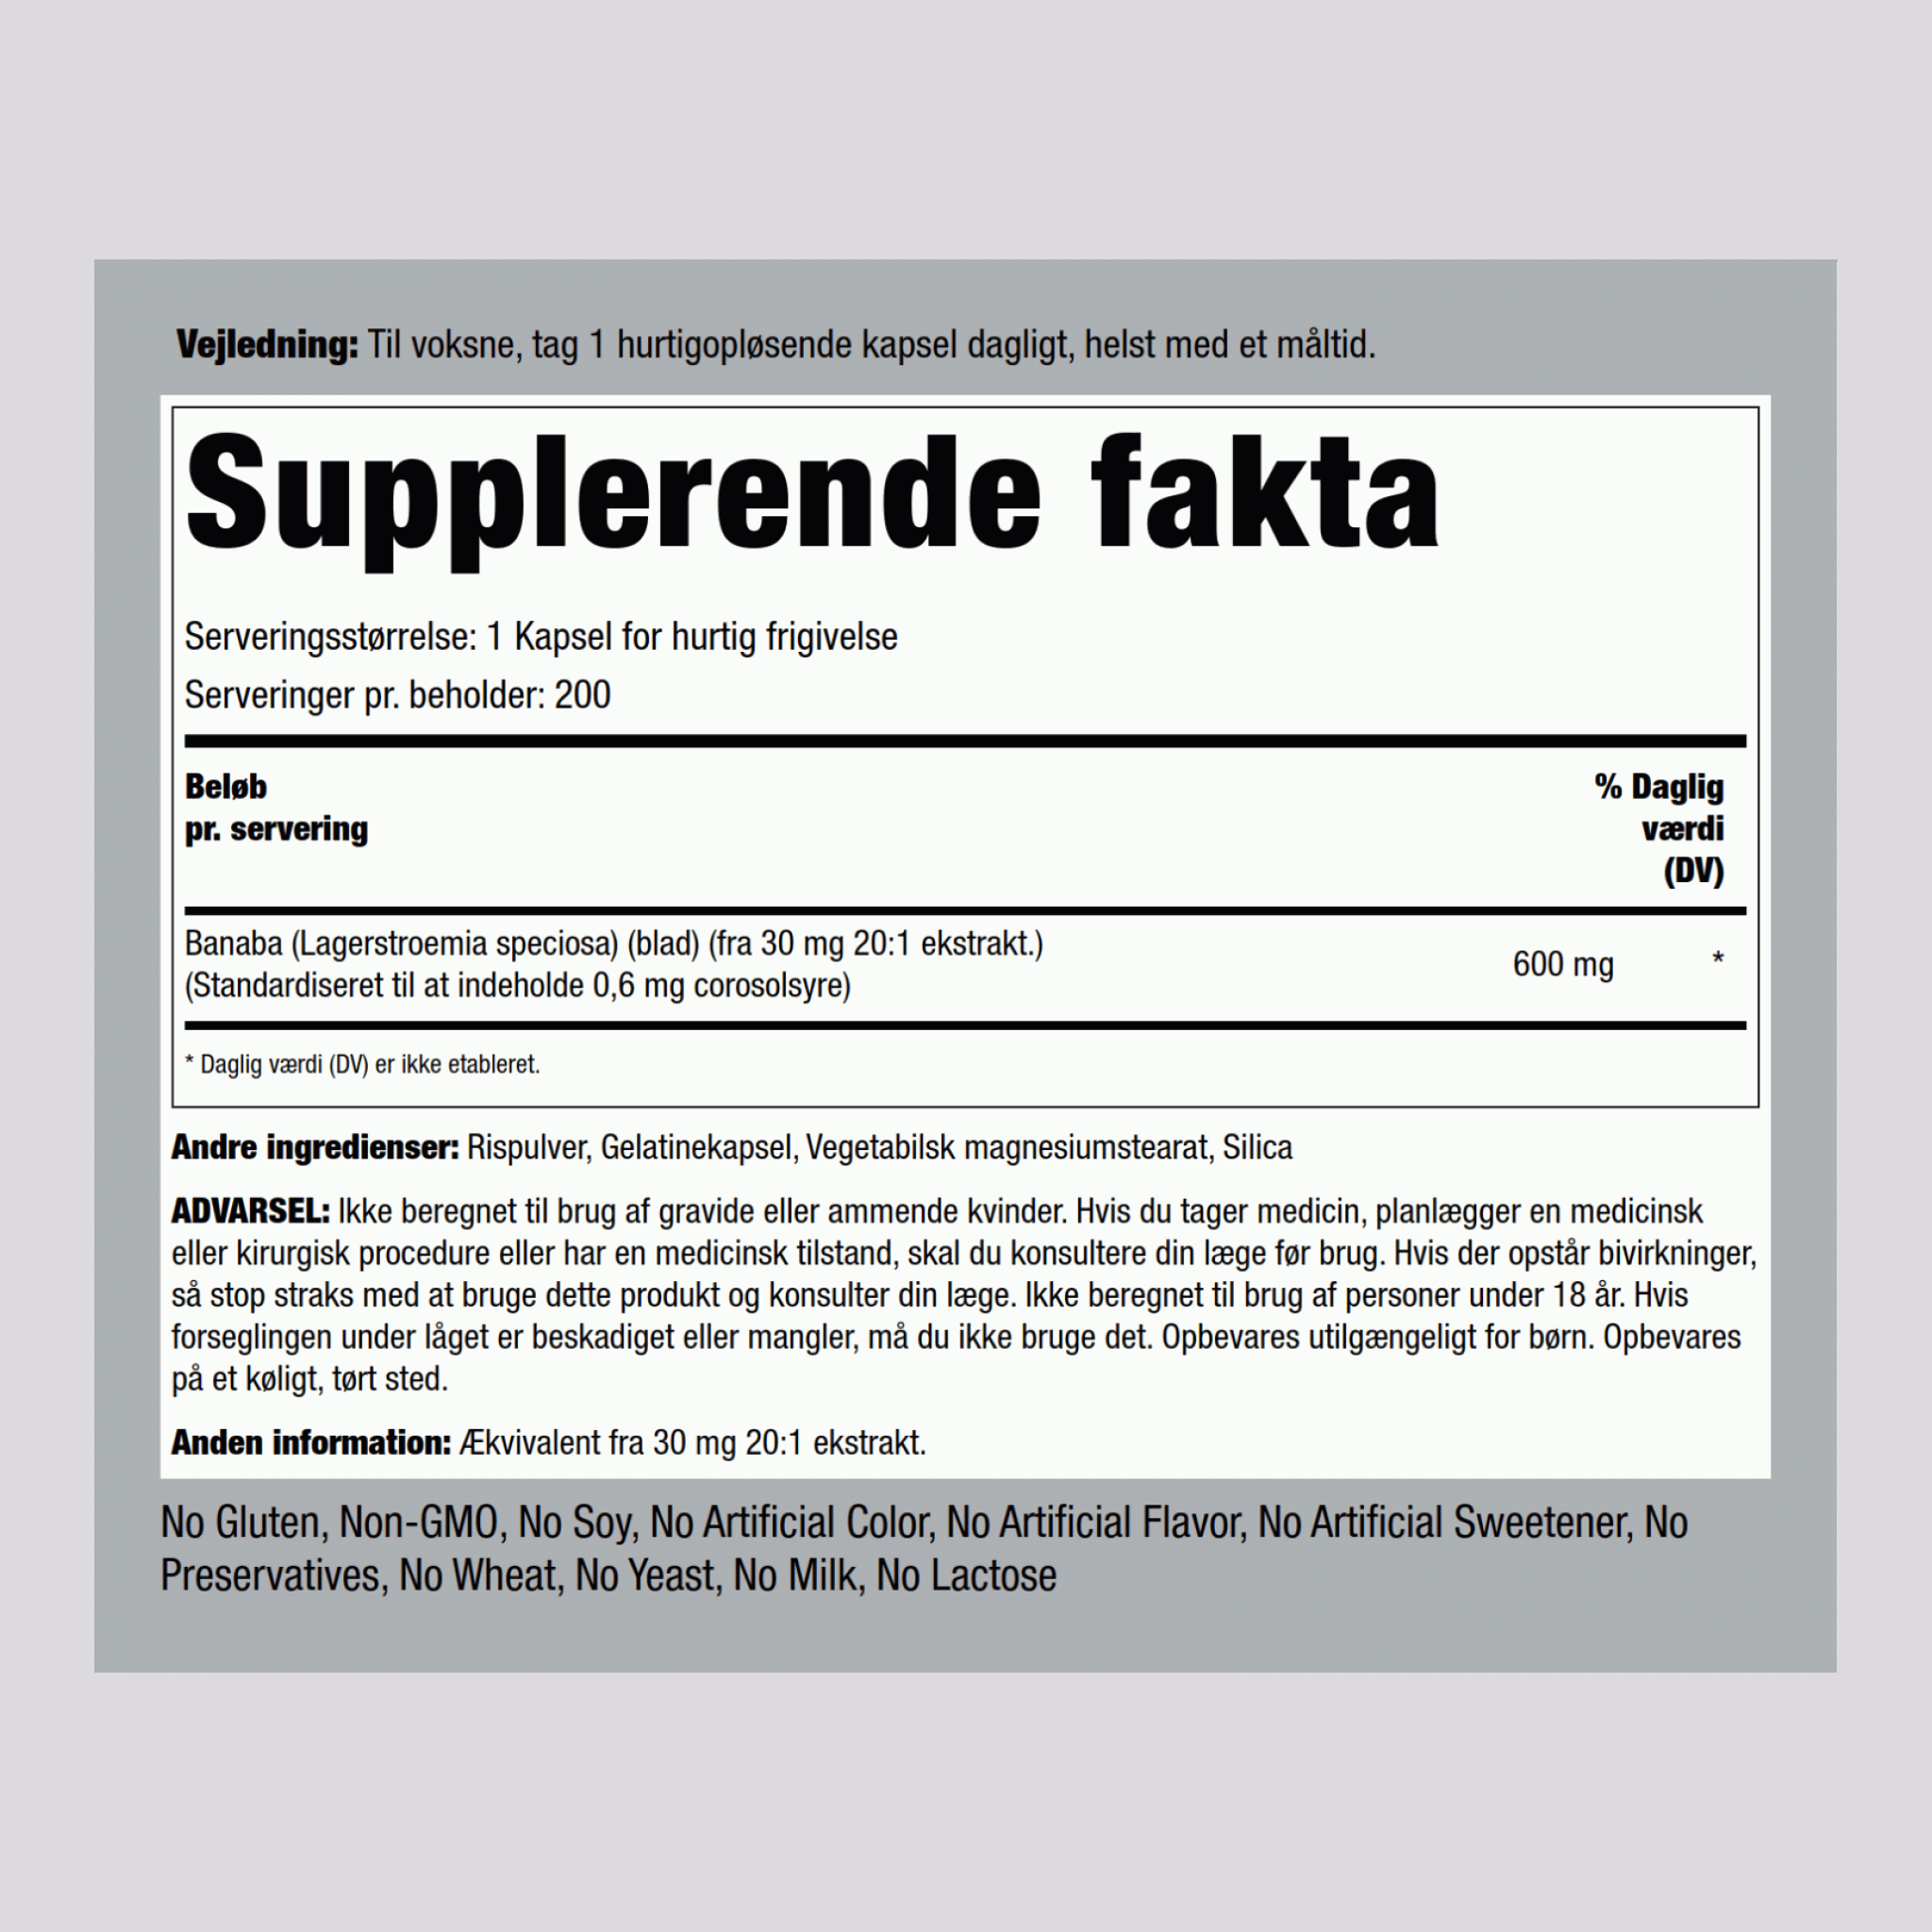 Banaba ekstrakt (0,6 mg corosolsyre) 600 mg 200 Kapsler for hurtig frigivelse     